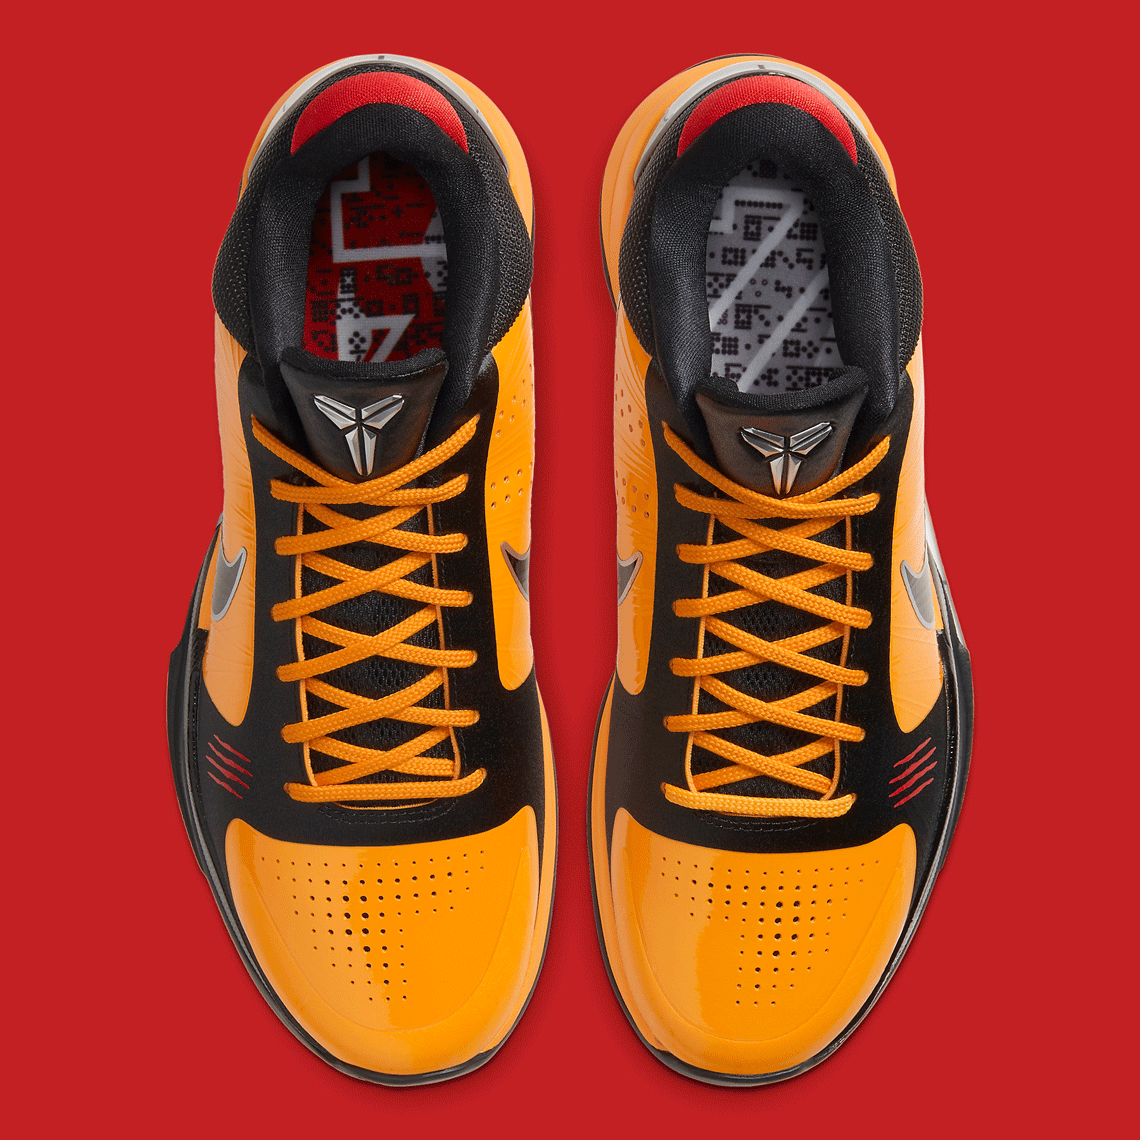 Nike Kobe 5 Protro Bruce Lee CD4991-700 Release Info | SneakerNews.com